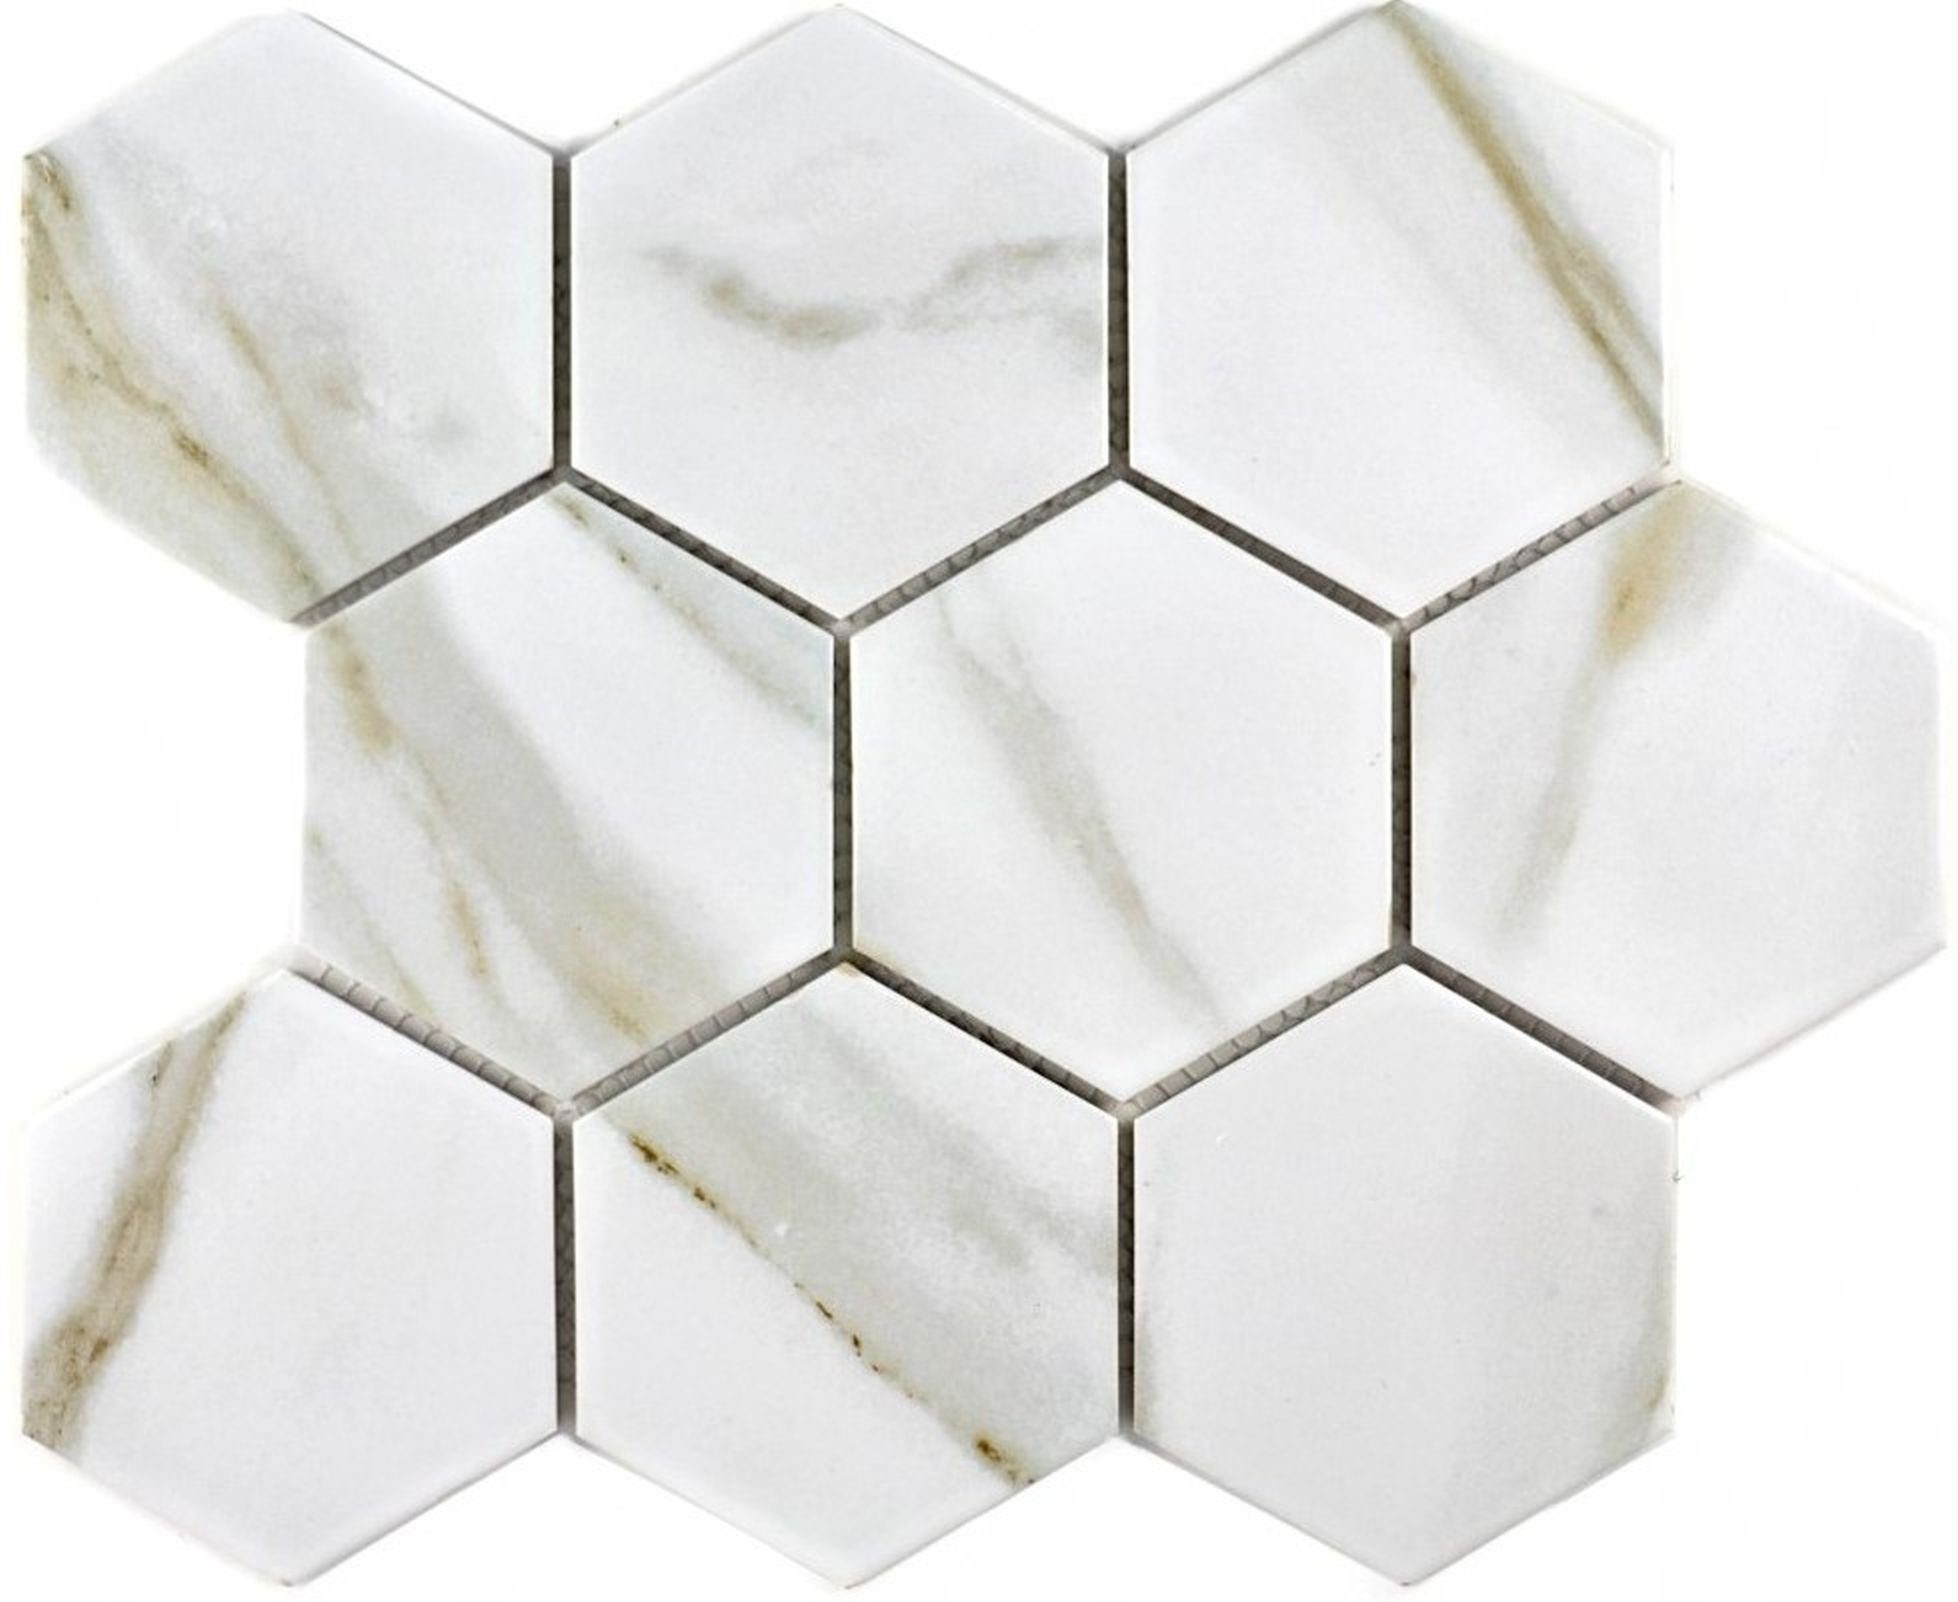 Mosani Mosaikfliesen Hexagonale Sechseck Mosaik Fliese Keramik weiß grau Calacatta Wand